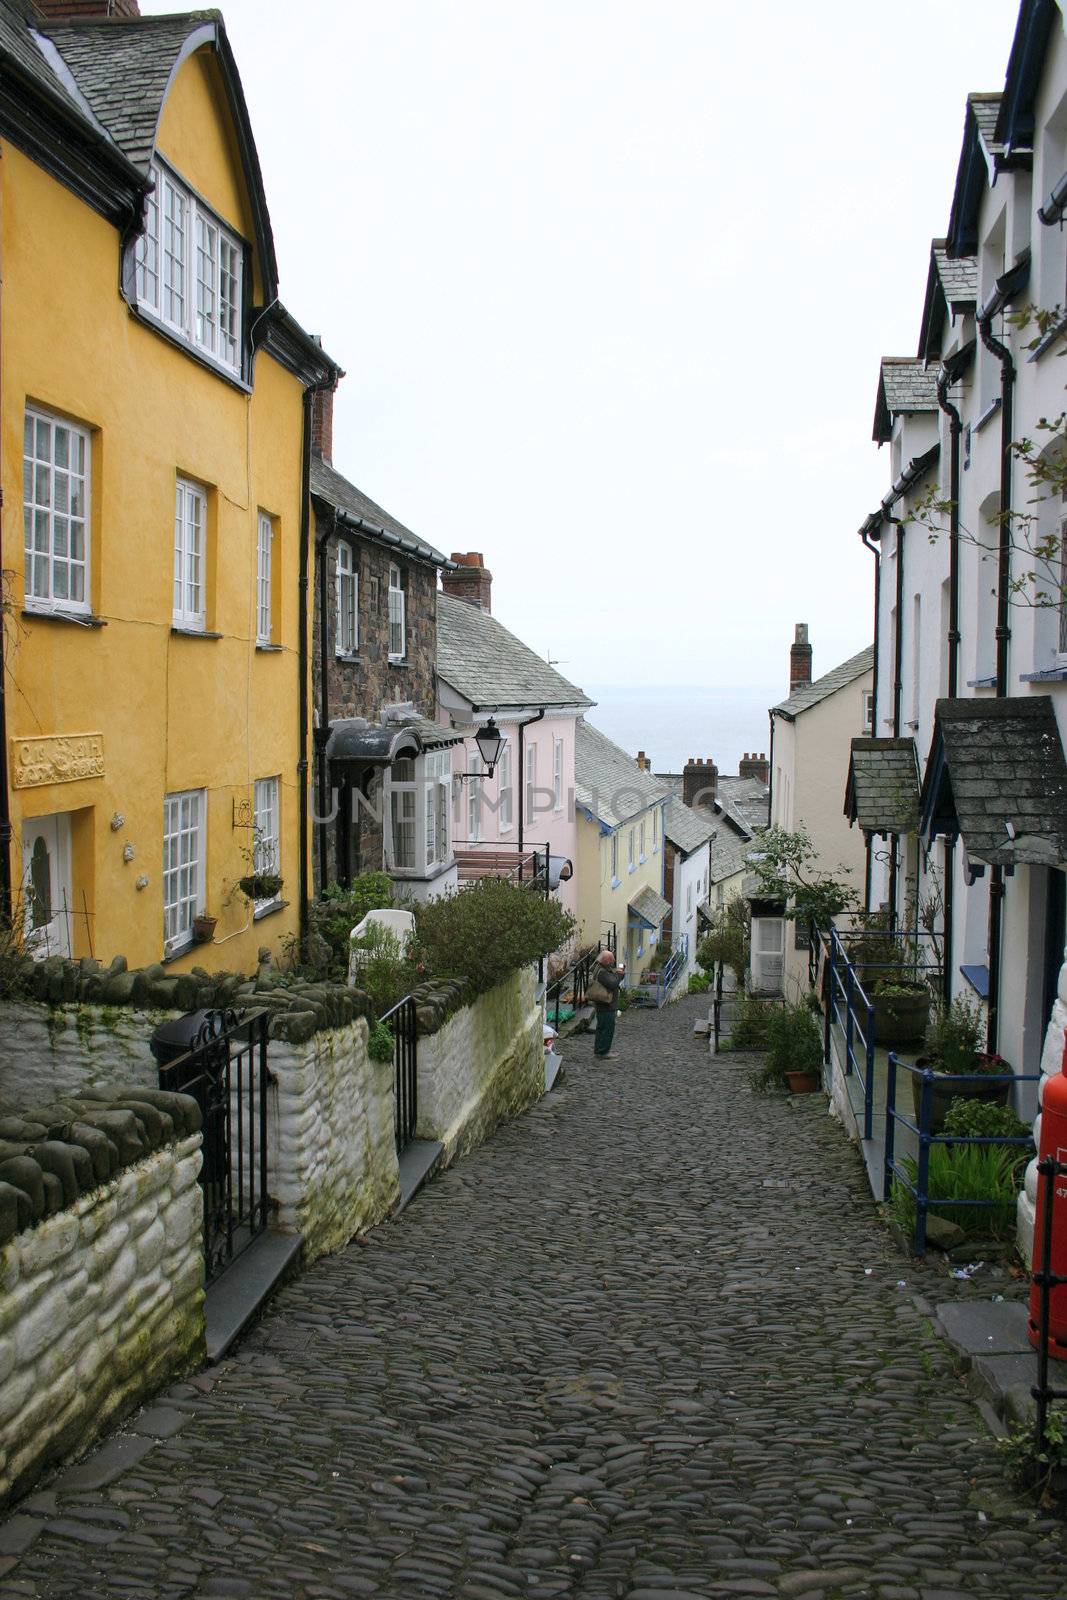 steps in a village street by leafy